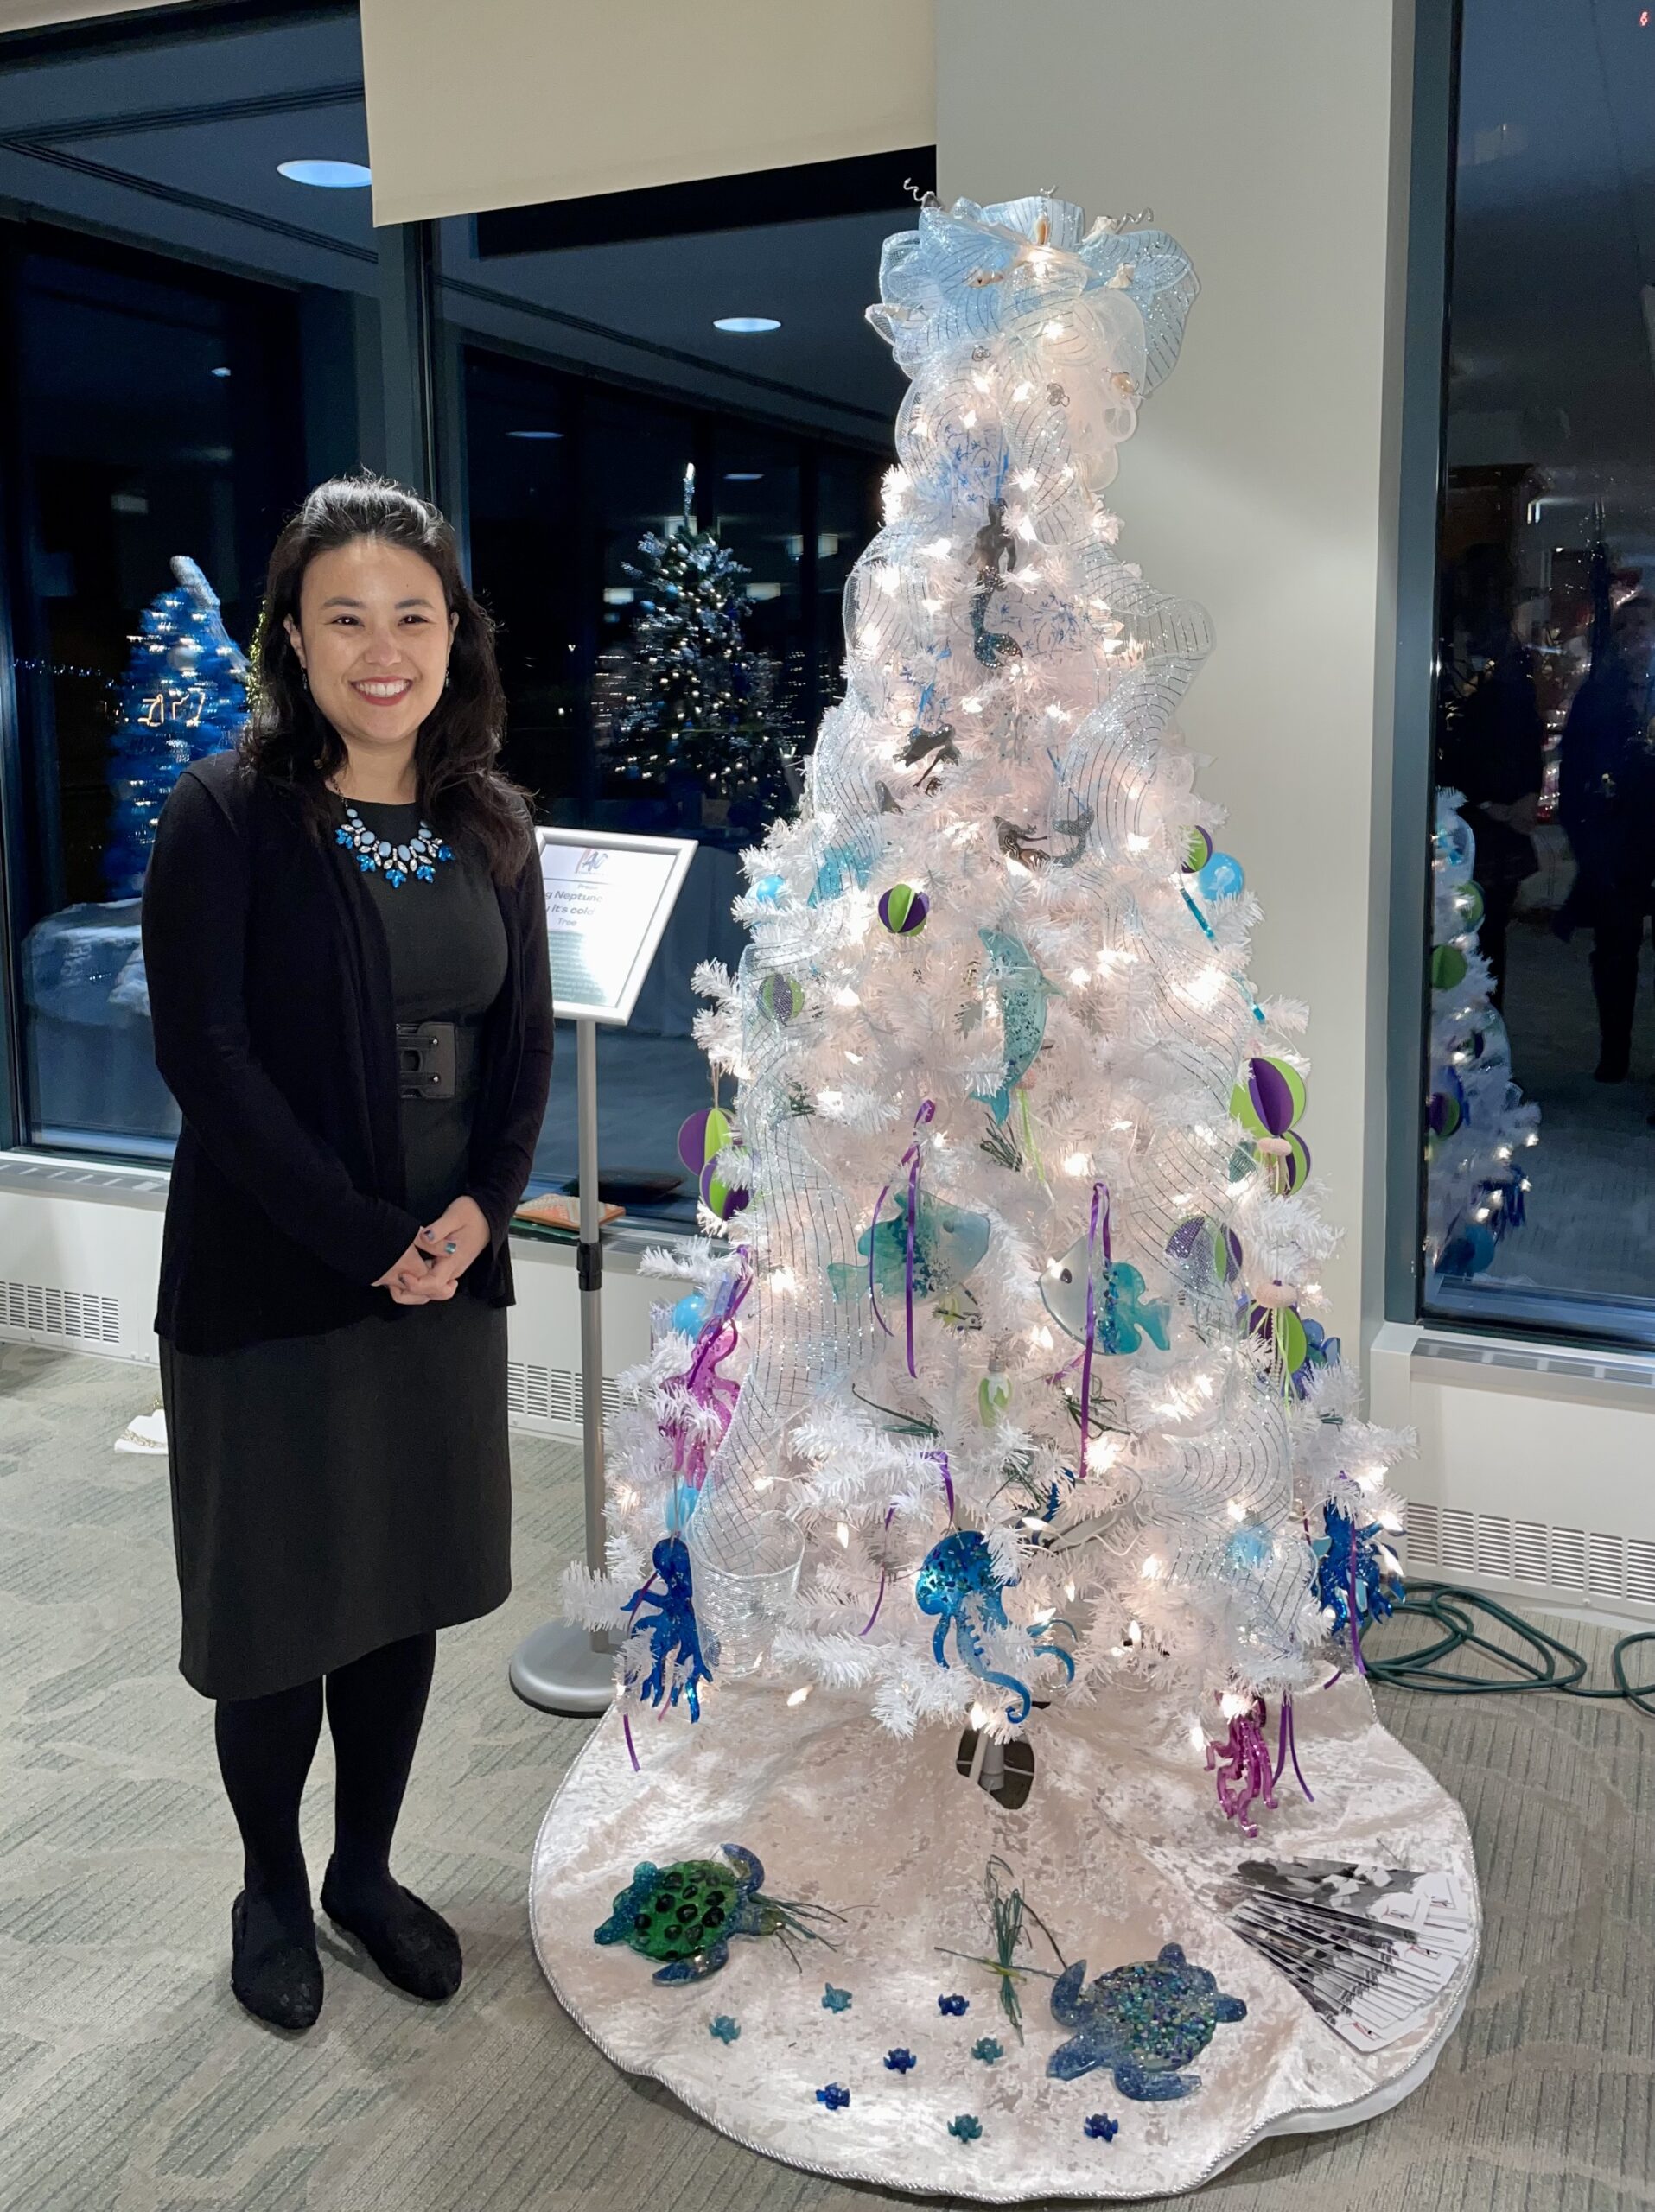 Woman Smiling Next to White Christmas Tree